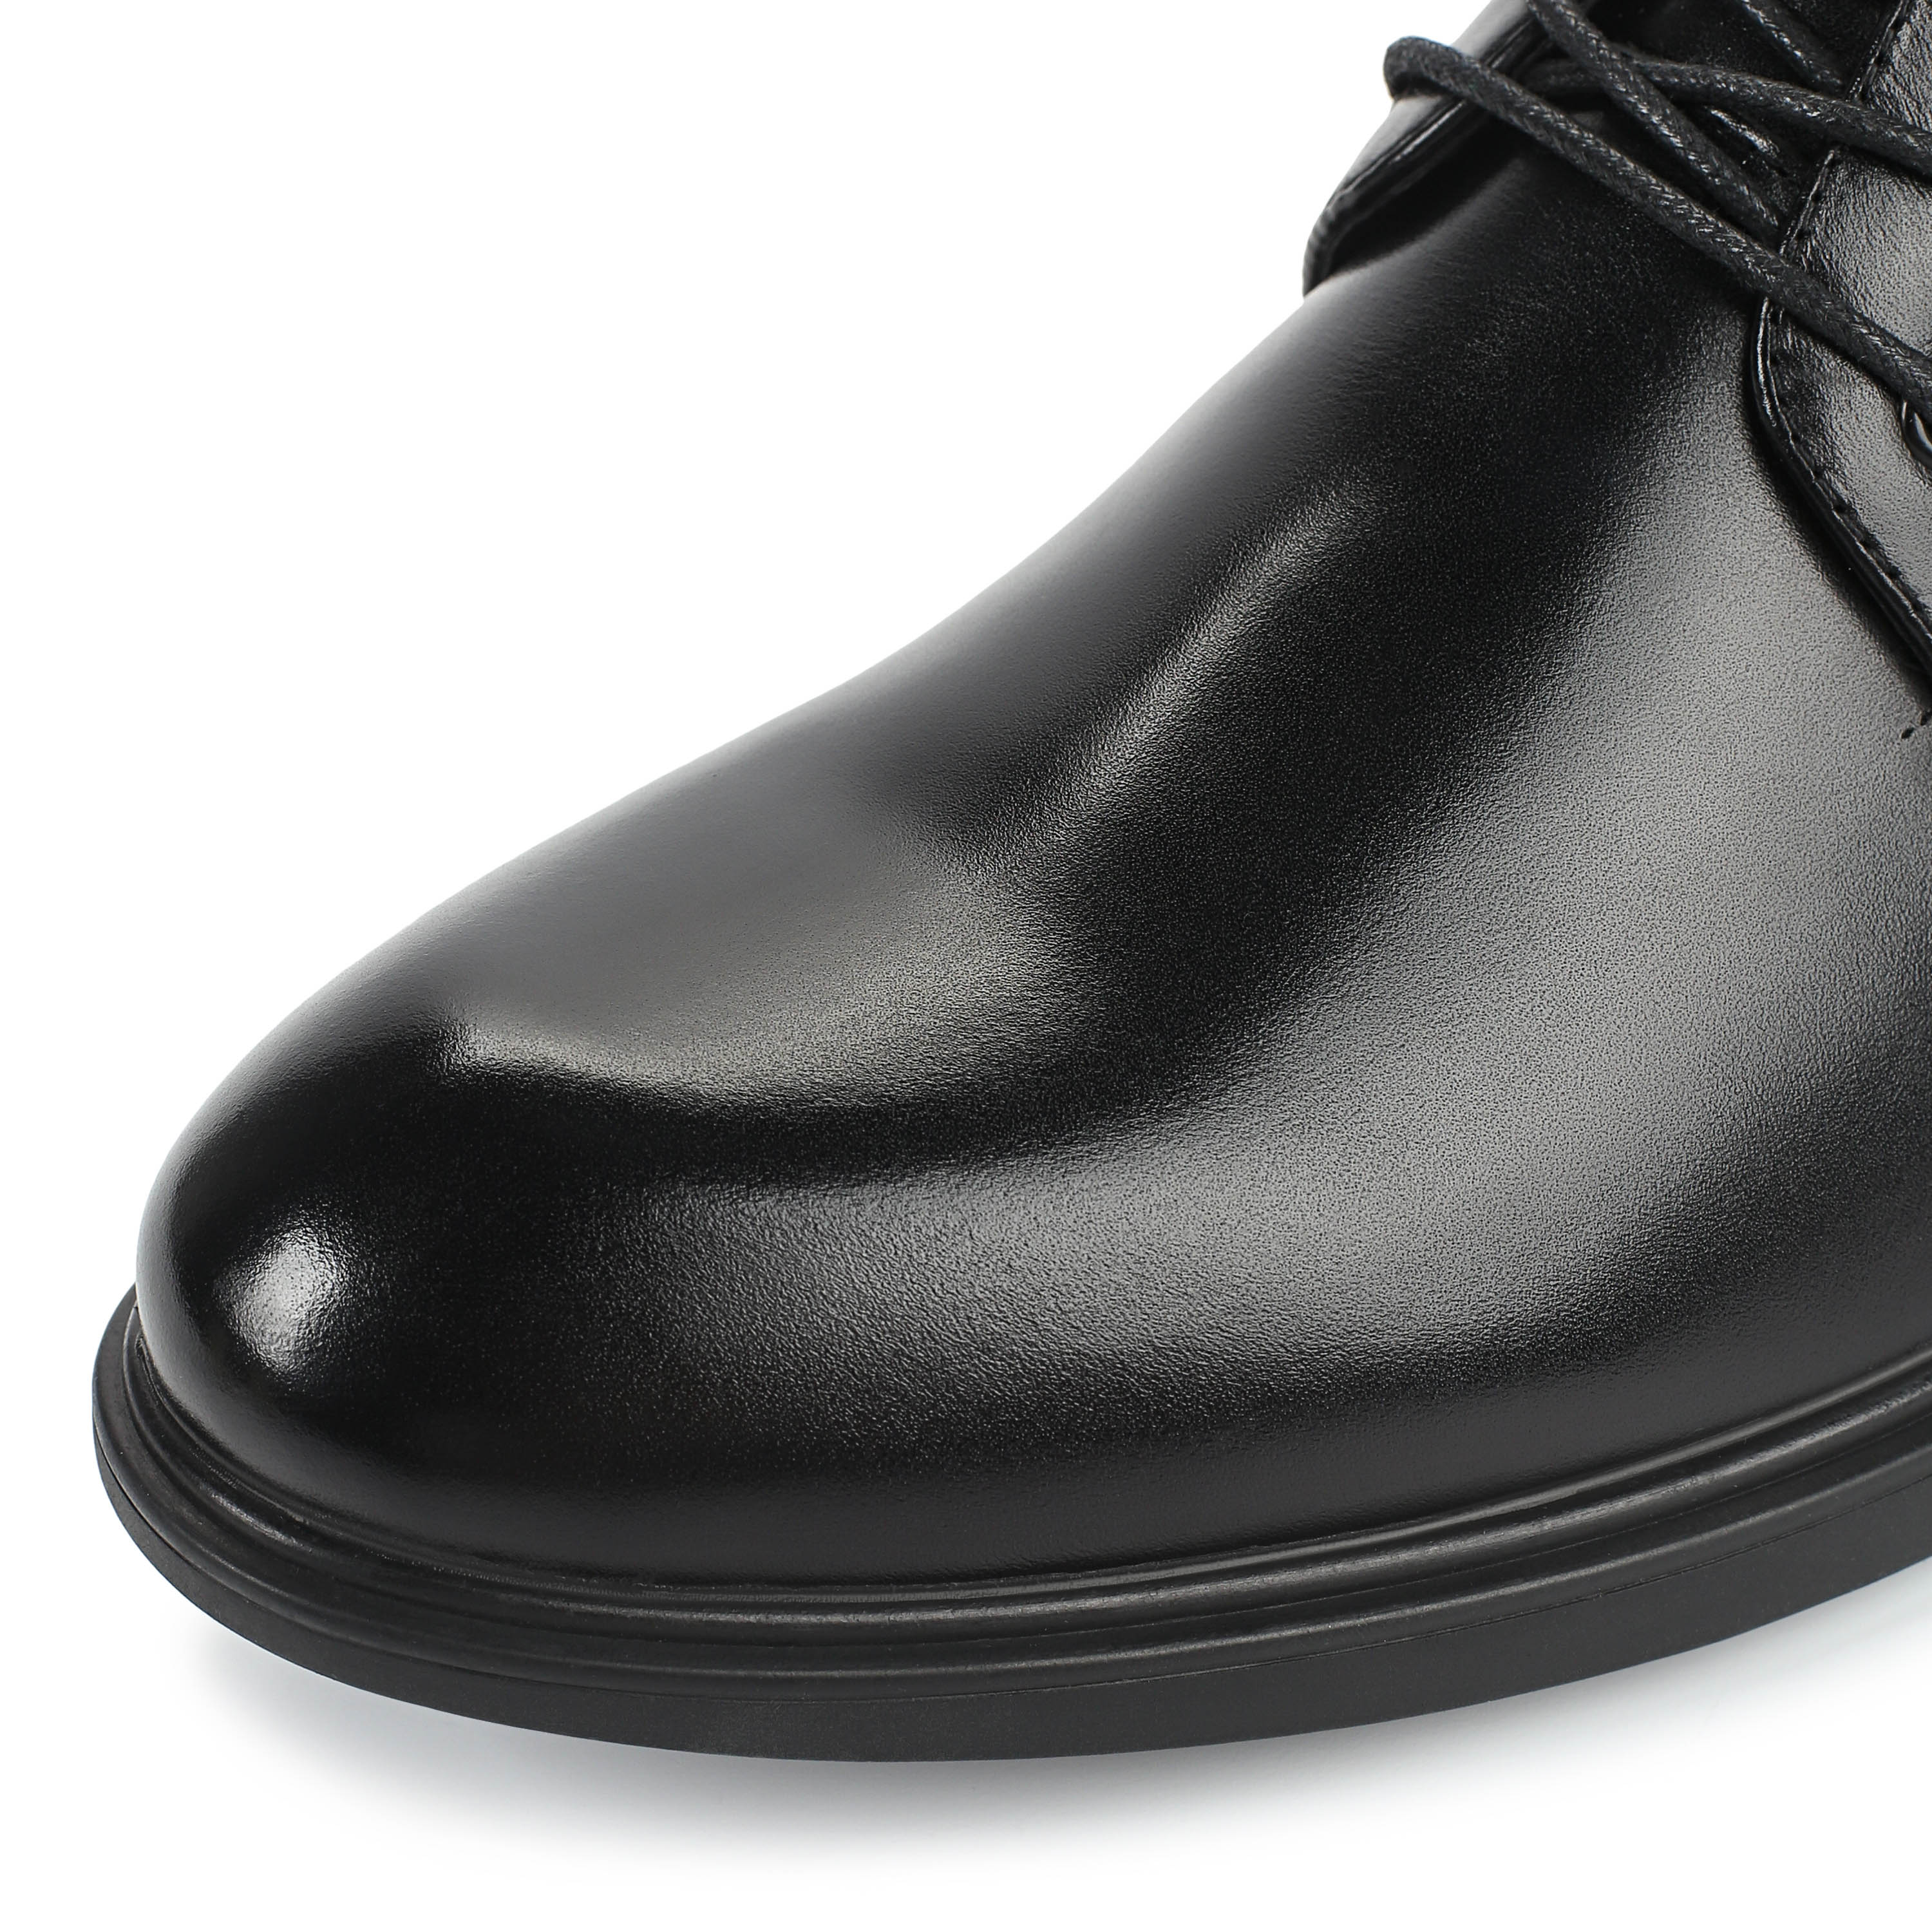 Ботинки Thomas Munz 73-080B-2101, цвет черный, размер 40 дерби - фото 6